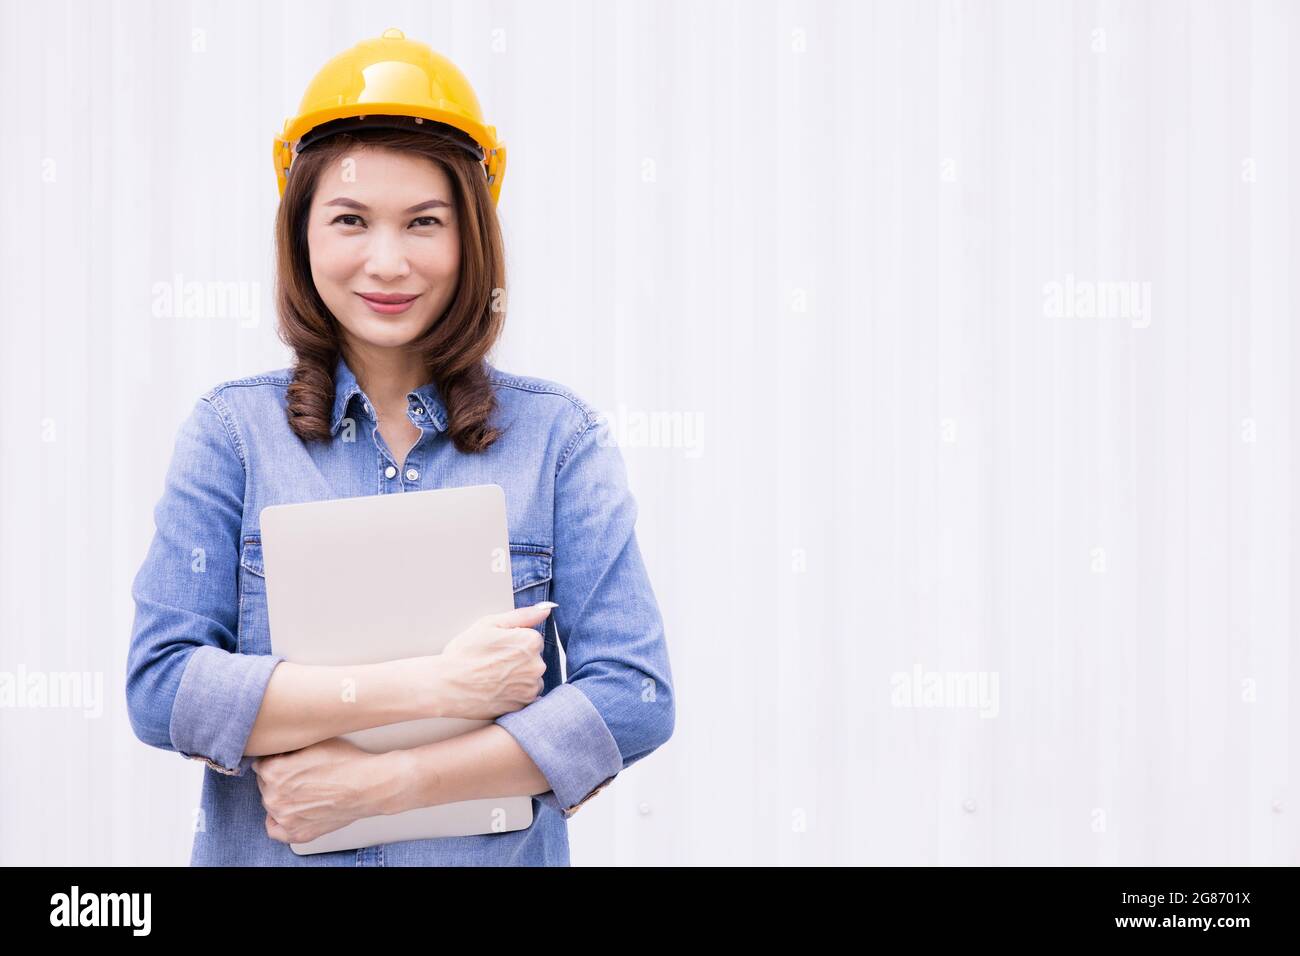 Schöne asiatische weibliche Ingenieur in Jeans Kleid tragen gelbe Sicherheit Hard hat mit Laptop-Computer Notebook Arbeit bei der Konstruktion Standort außerhalb von Stockfoto